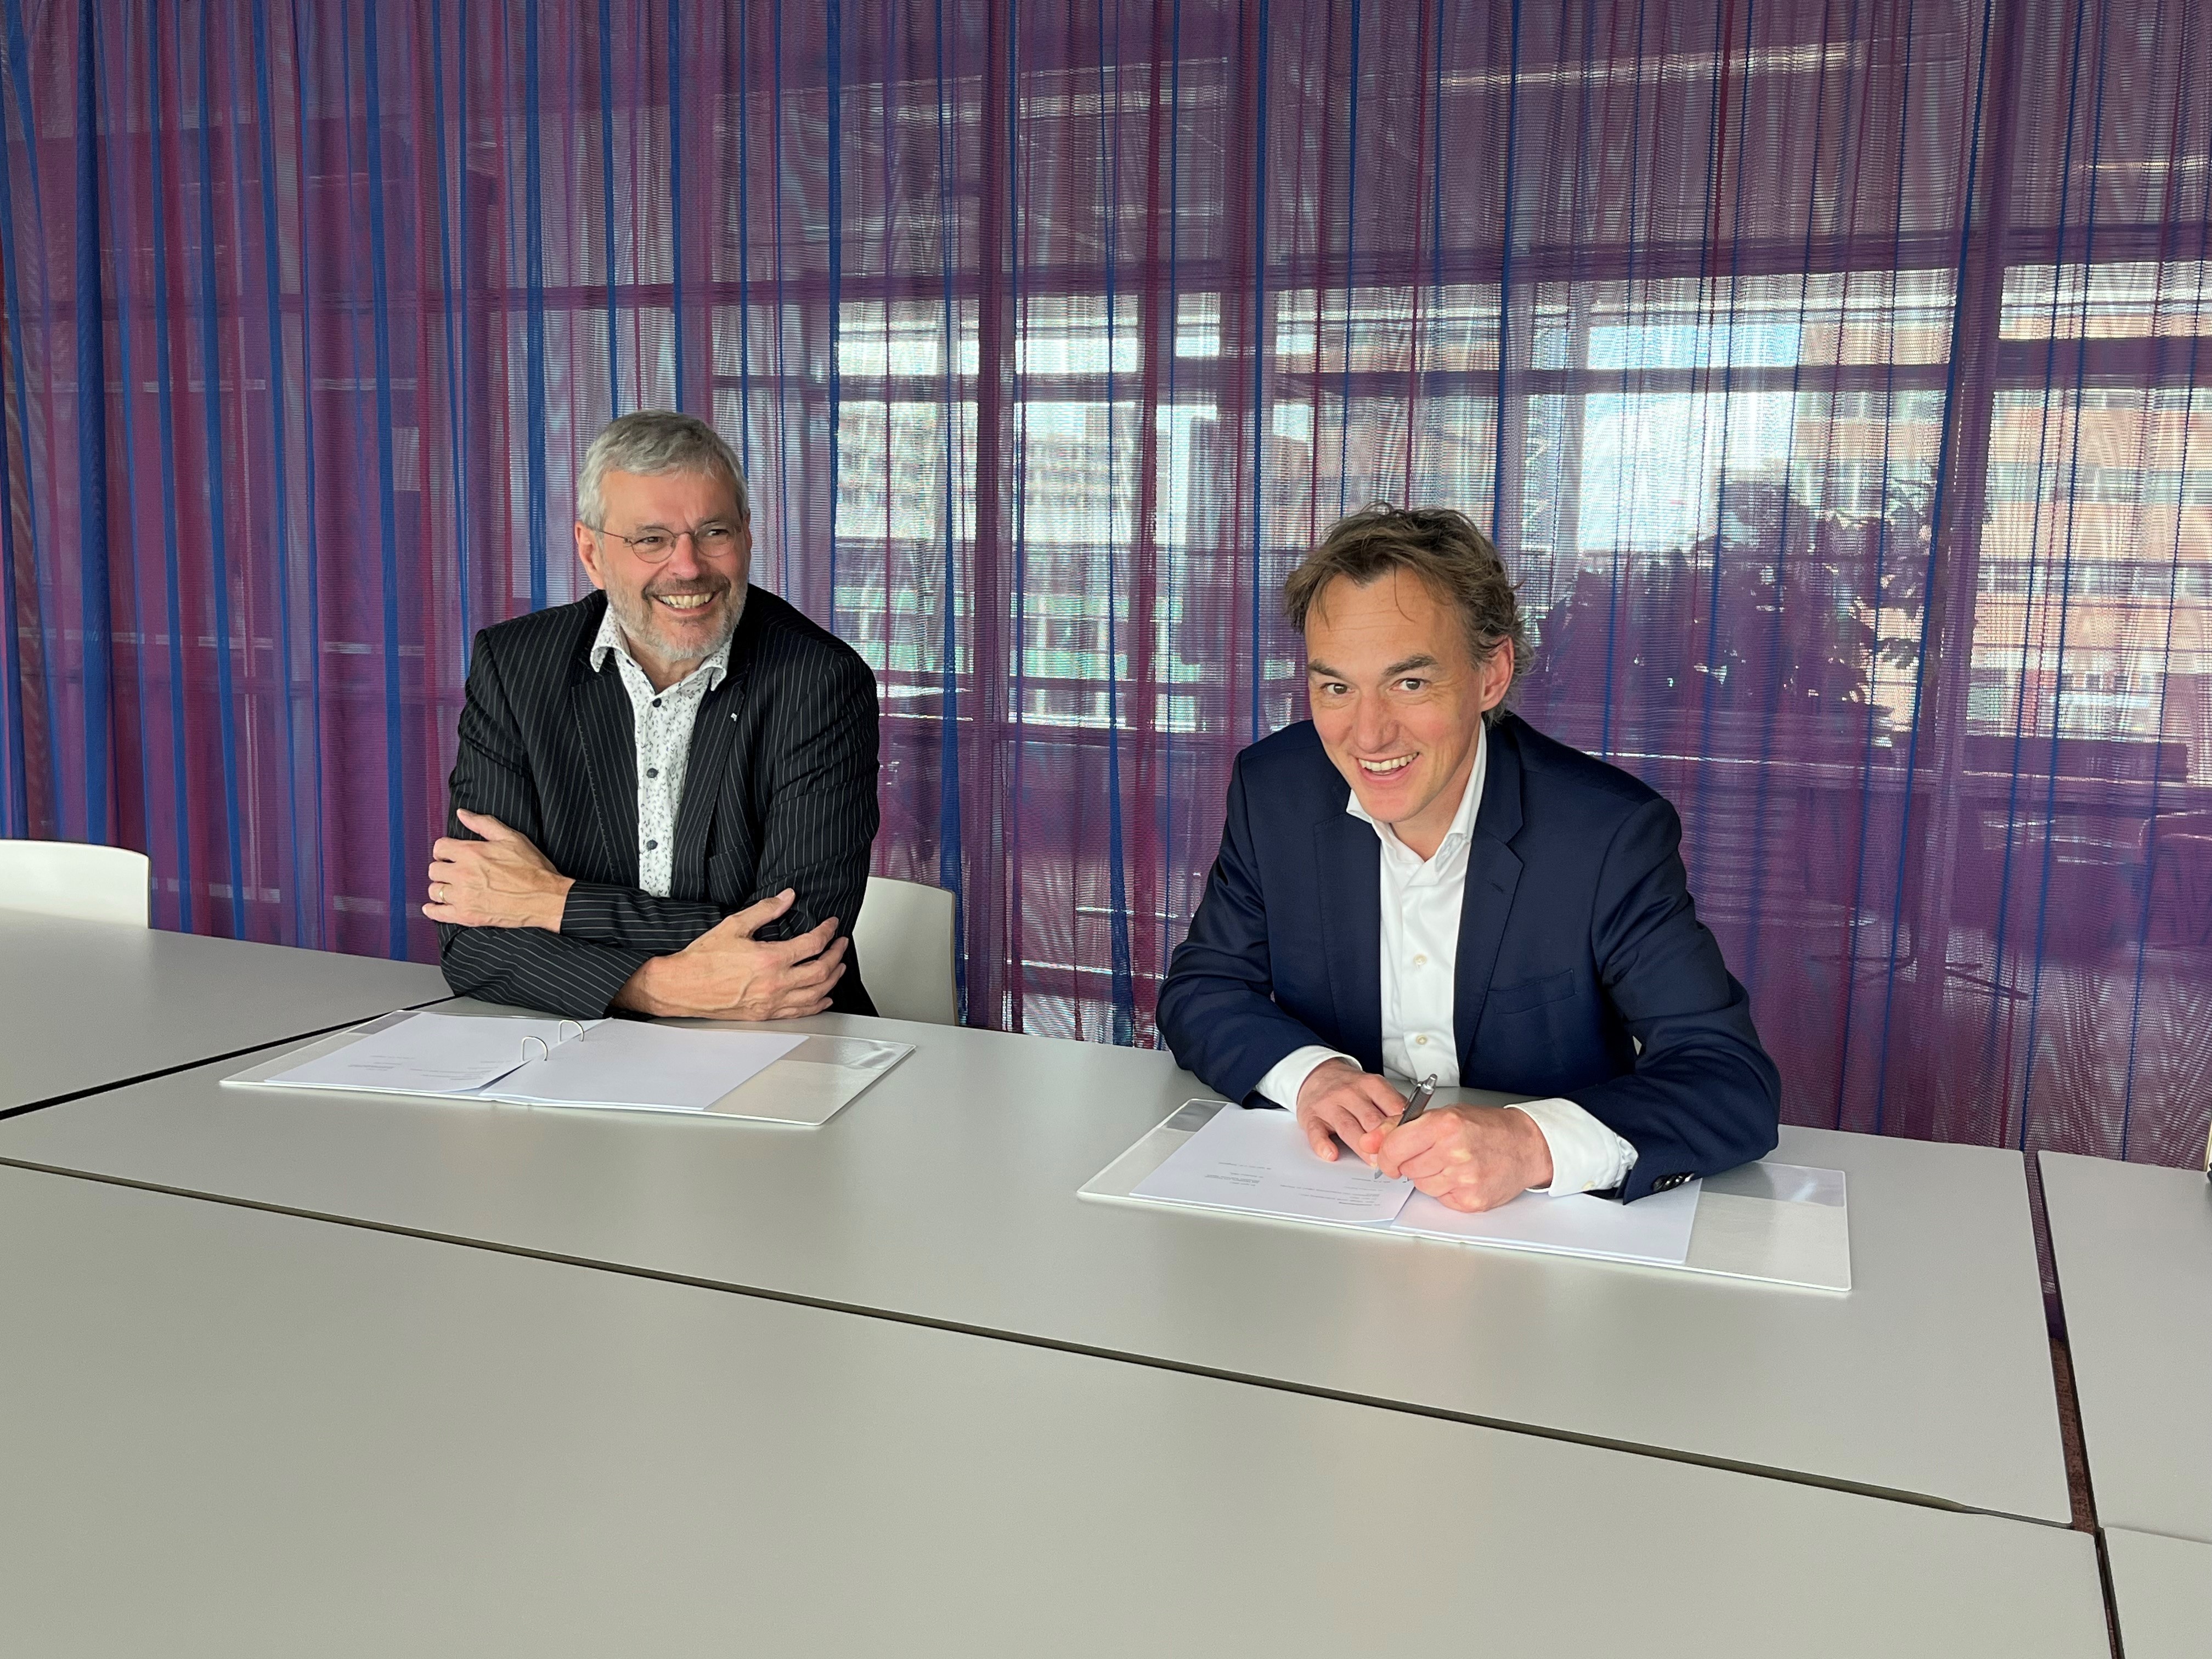 Ondertekening contract door Frank Jongbloed (directeur Domeinen, l.) en Richard Wiersema (directeur Operatie DICTU, r.)